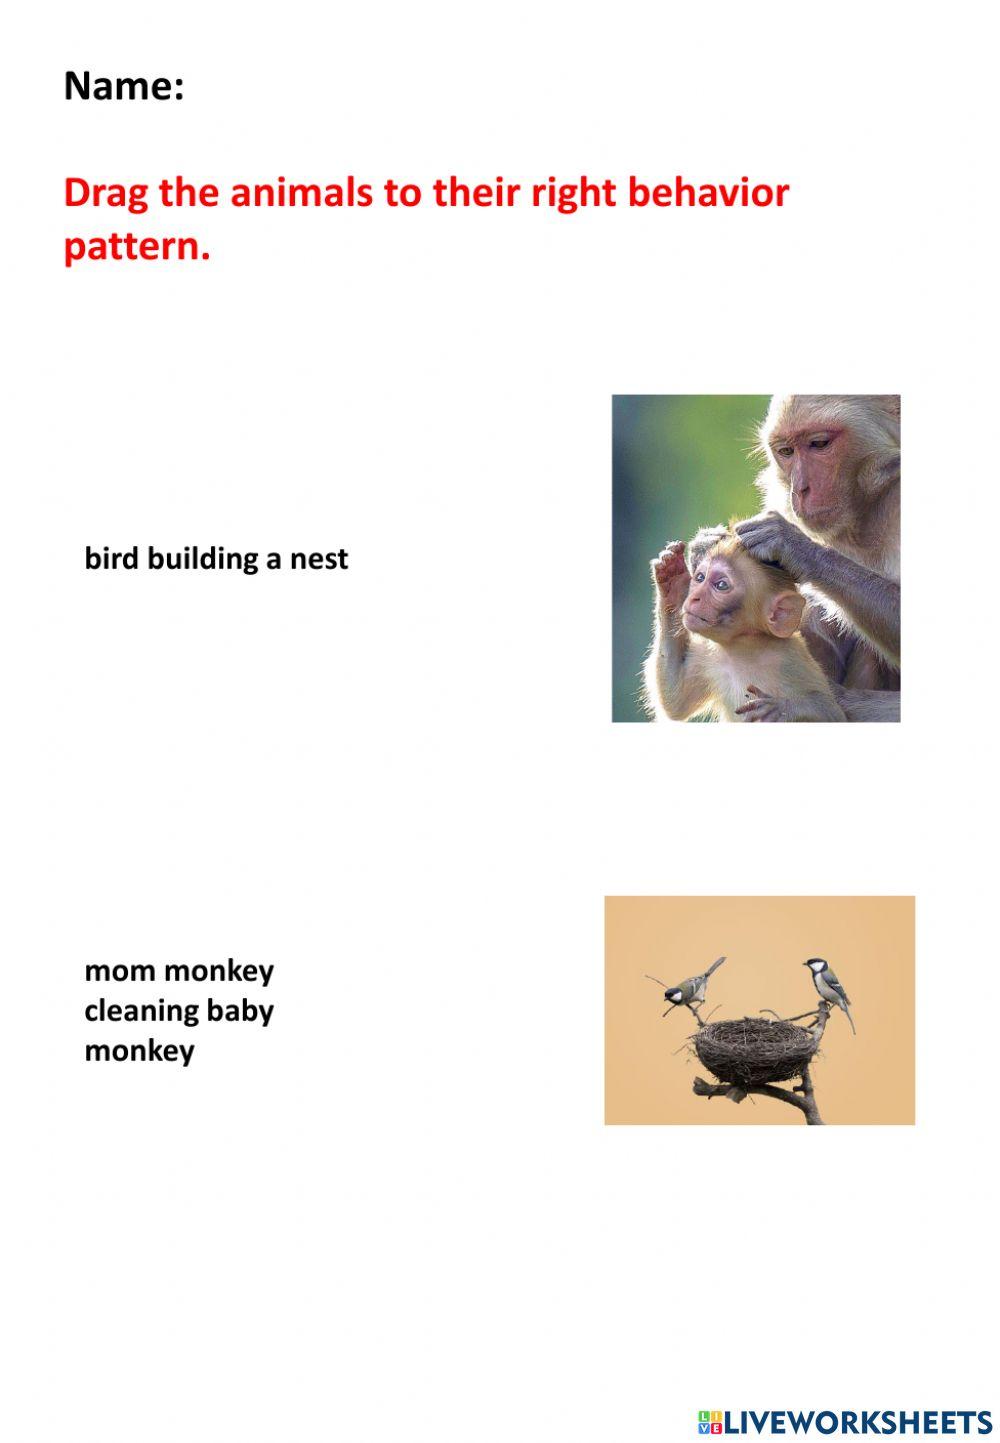 Animal beavior pattern